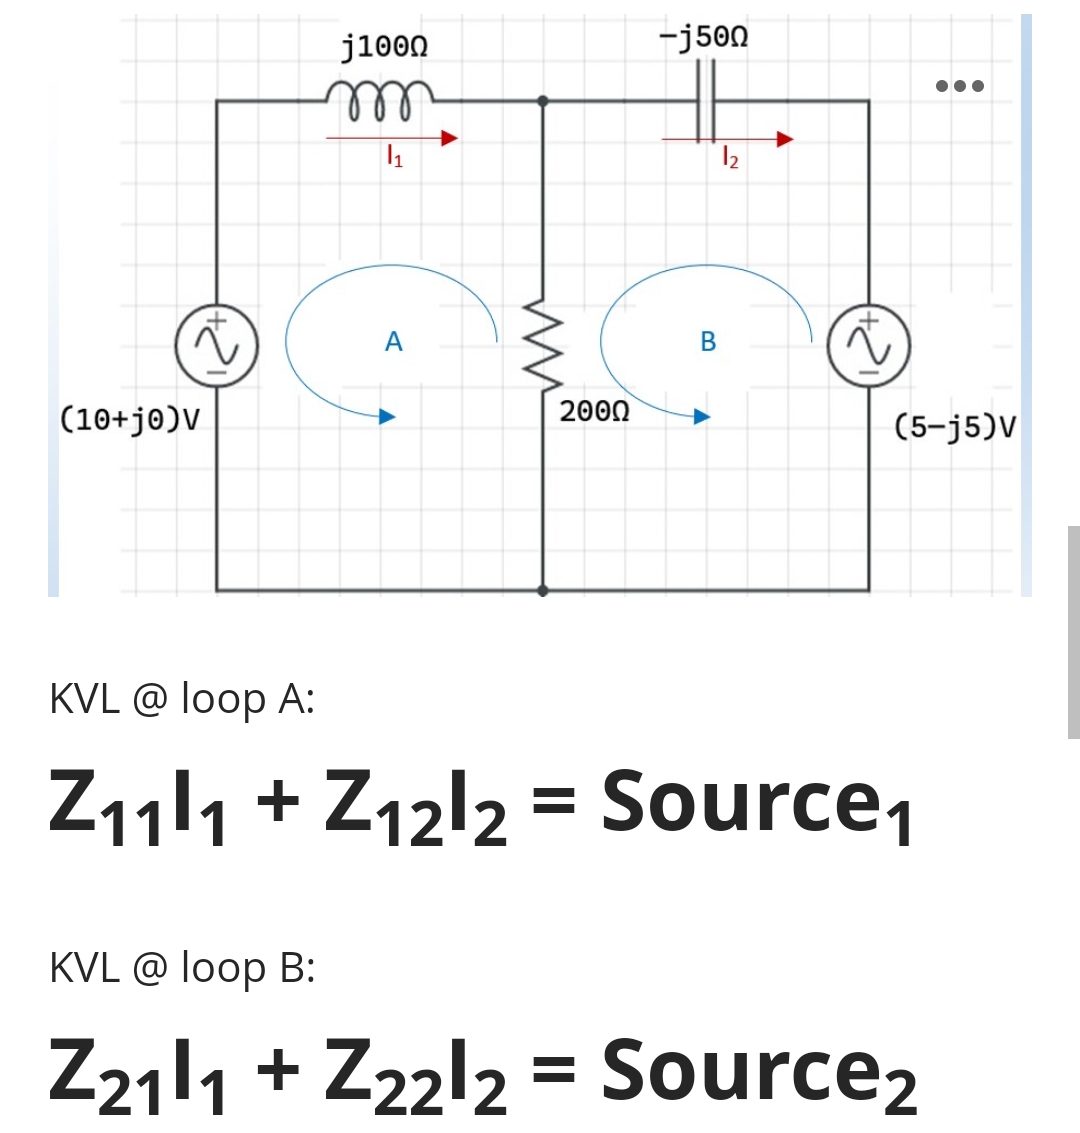 j1000
-j500
A
(10+j@)V
200Ω
(5-j5)V
KVL @ loop A:
Z111 + Z12l2 = Source,
KVL @ loop B:
Z211 + Z22l2 = Source2
B.
